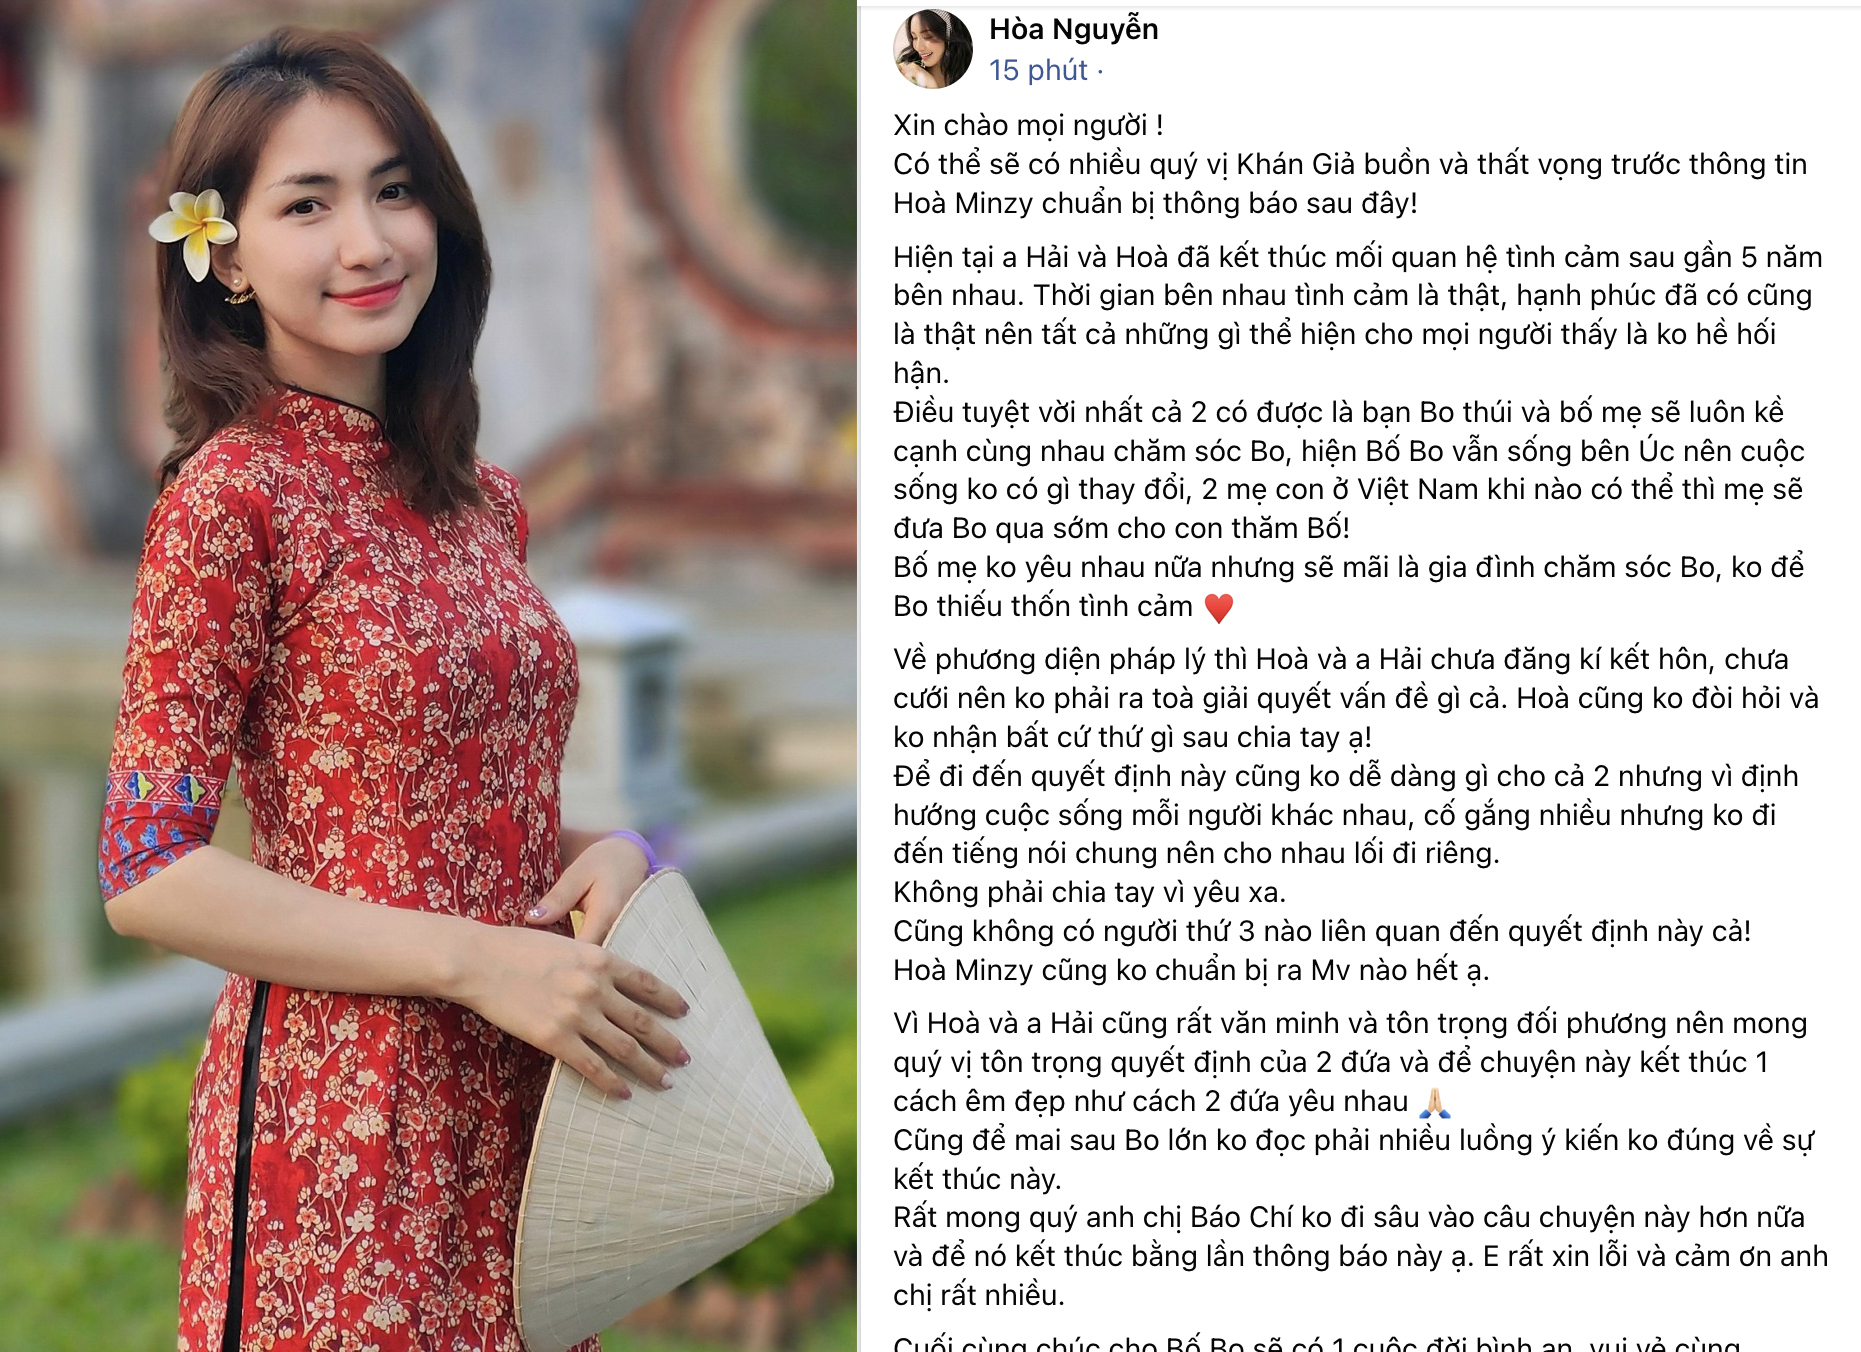 Bài đăng xác nhận việc chia tay bạn trai thiếu gia của Hòa Minzy khiến nhiều người bất ngờ